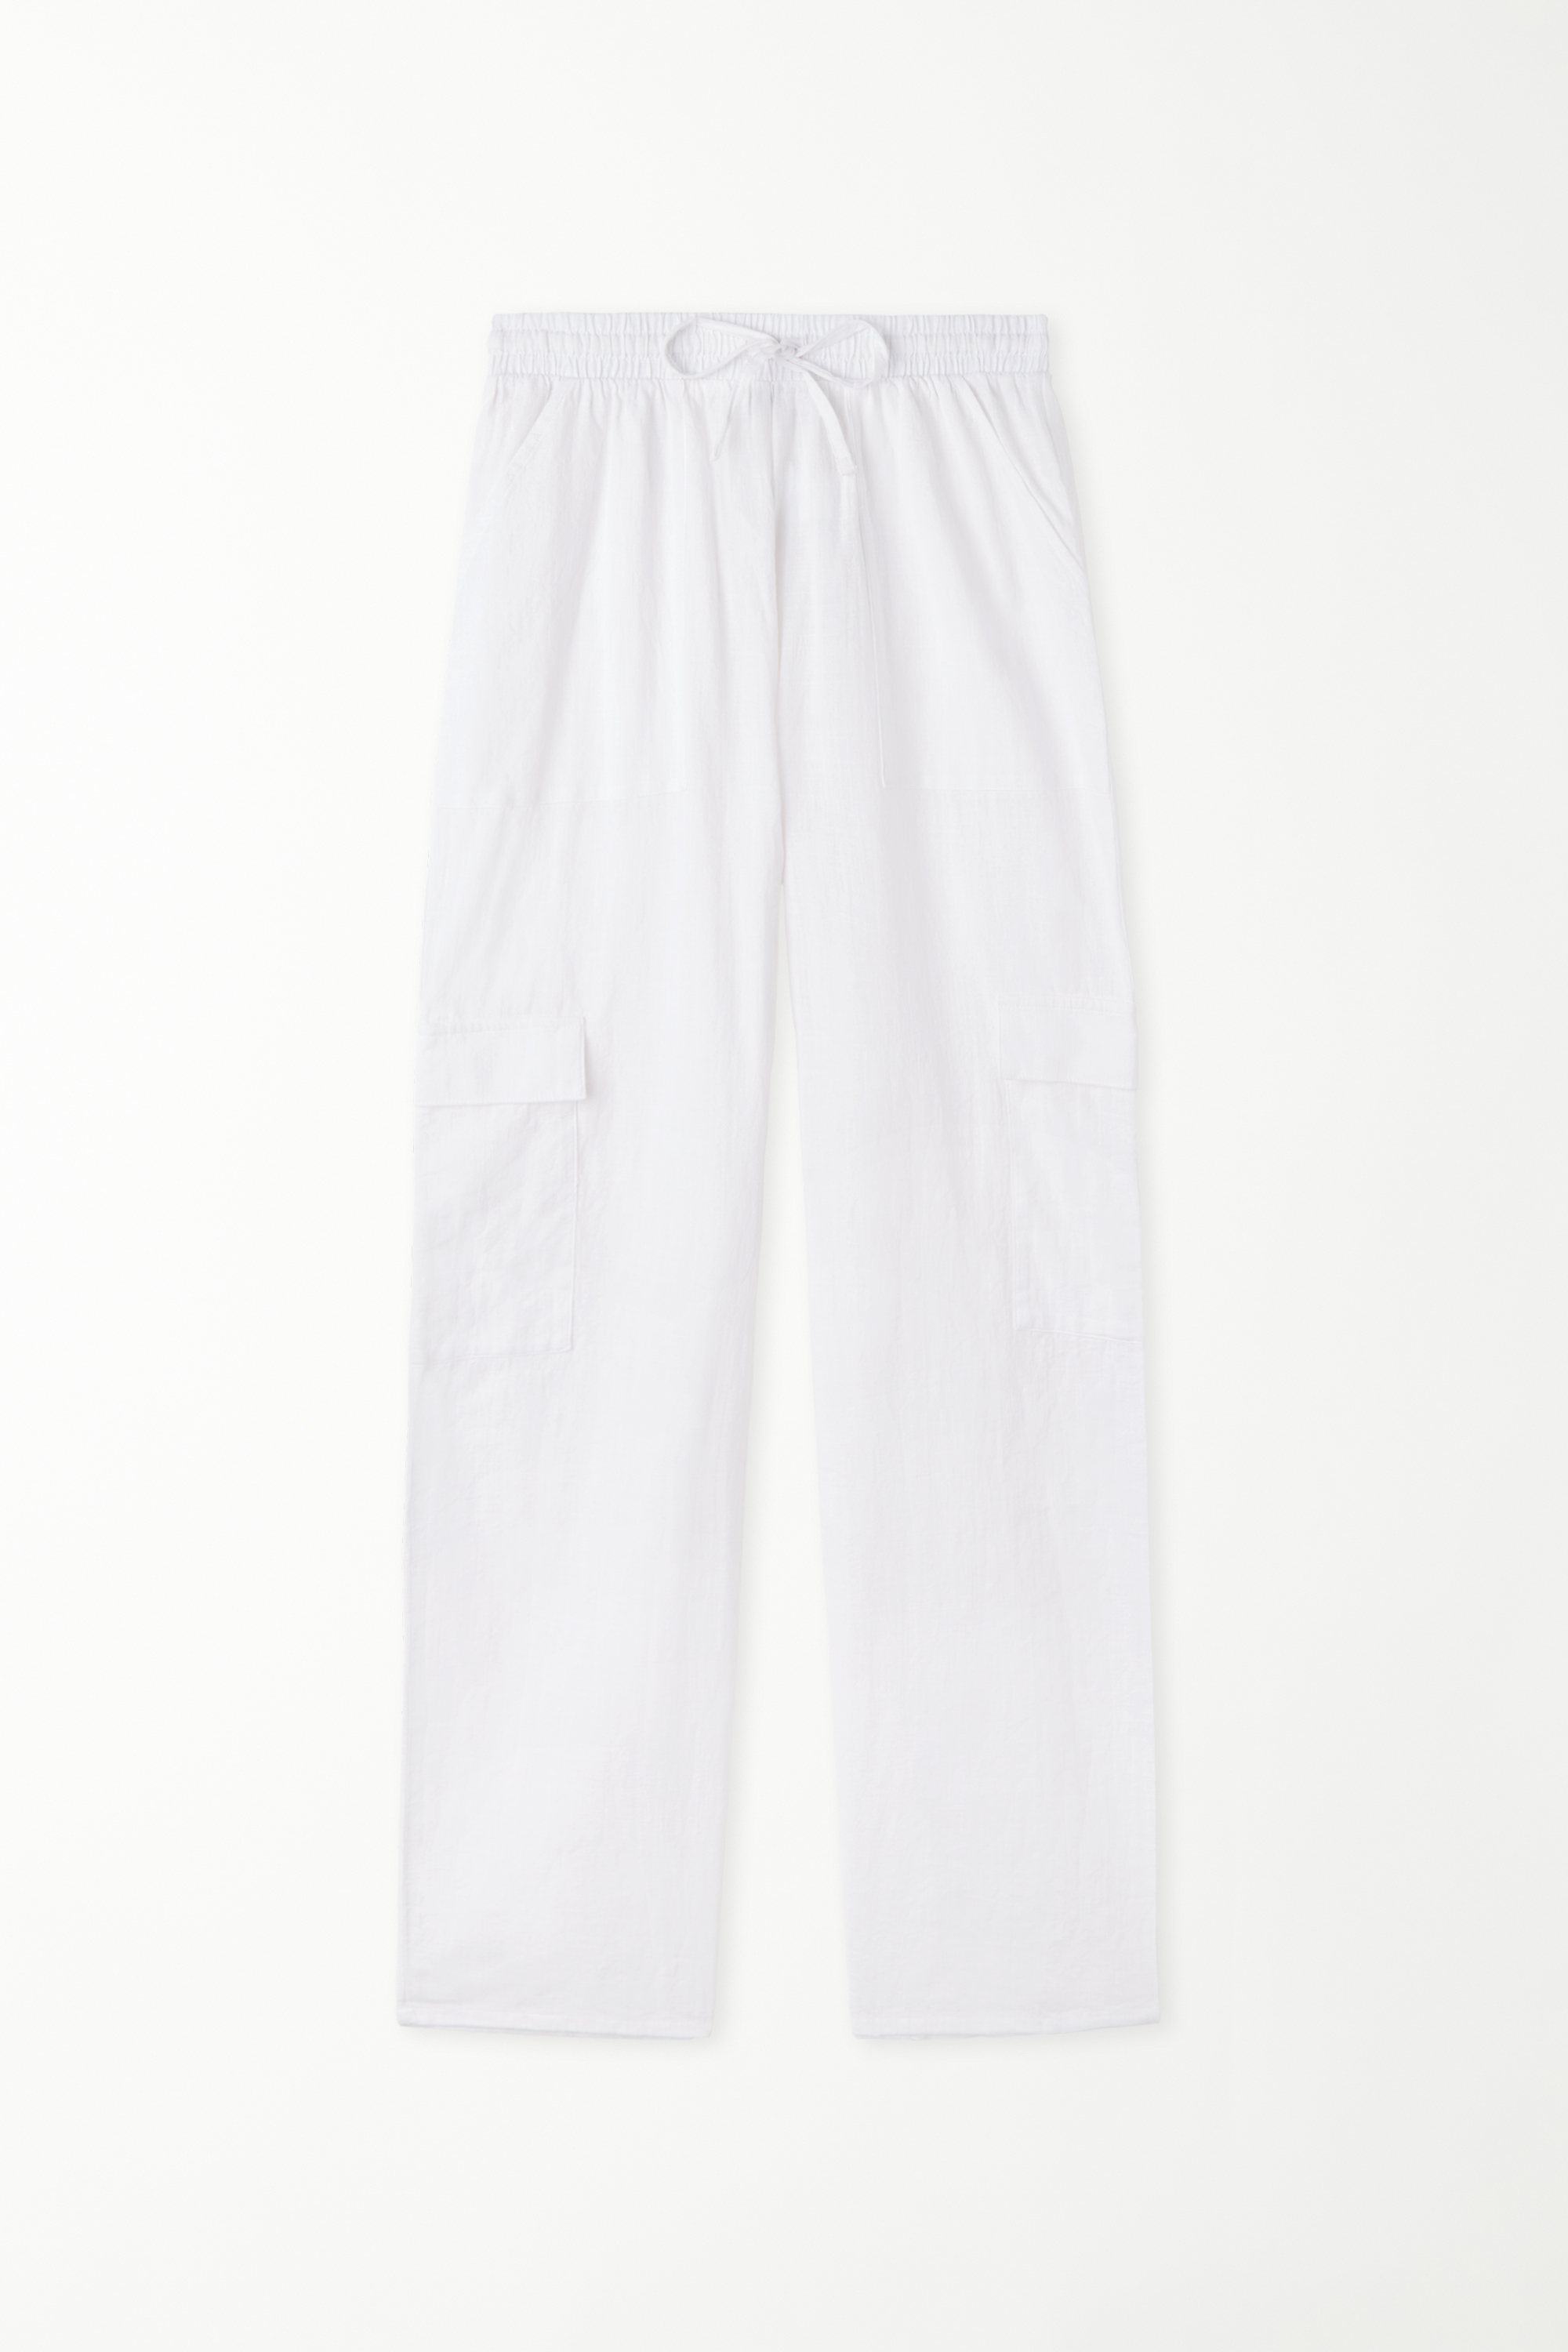 Pantaloni Lunghi in 100% Tela Cotone con Tasche